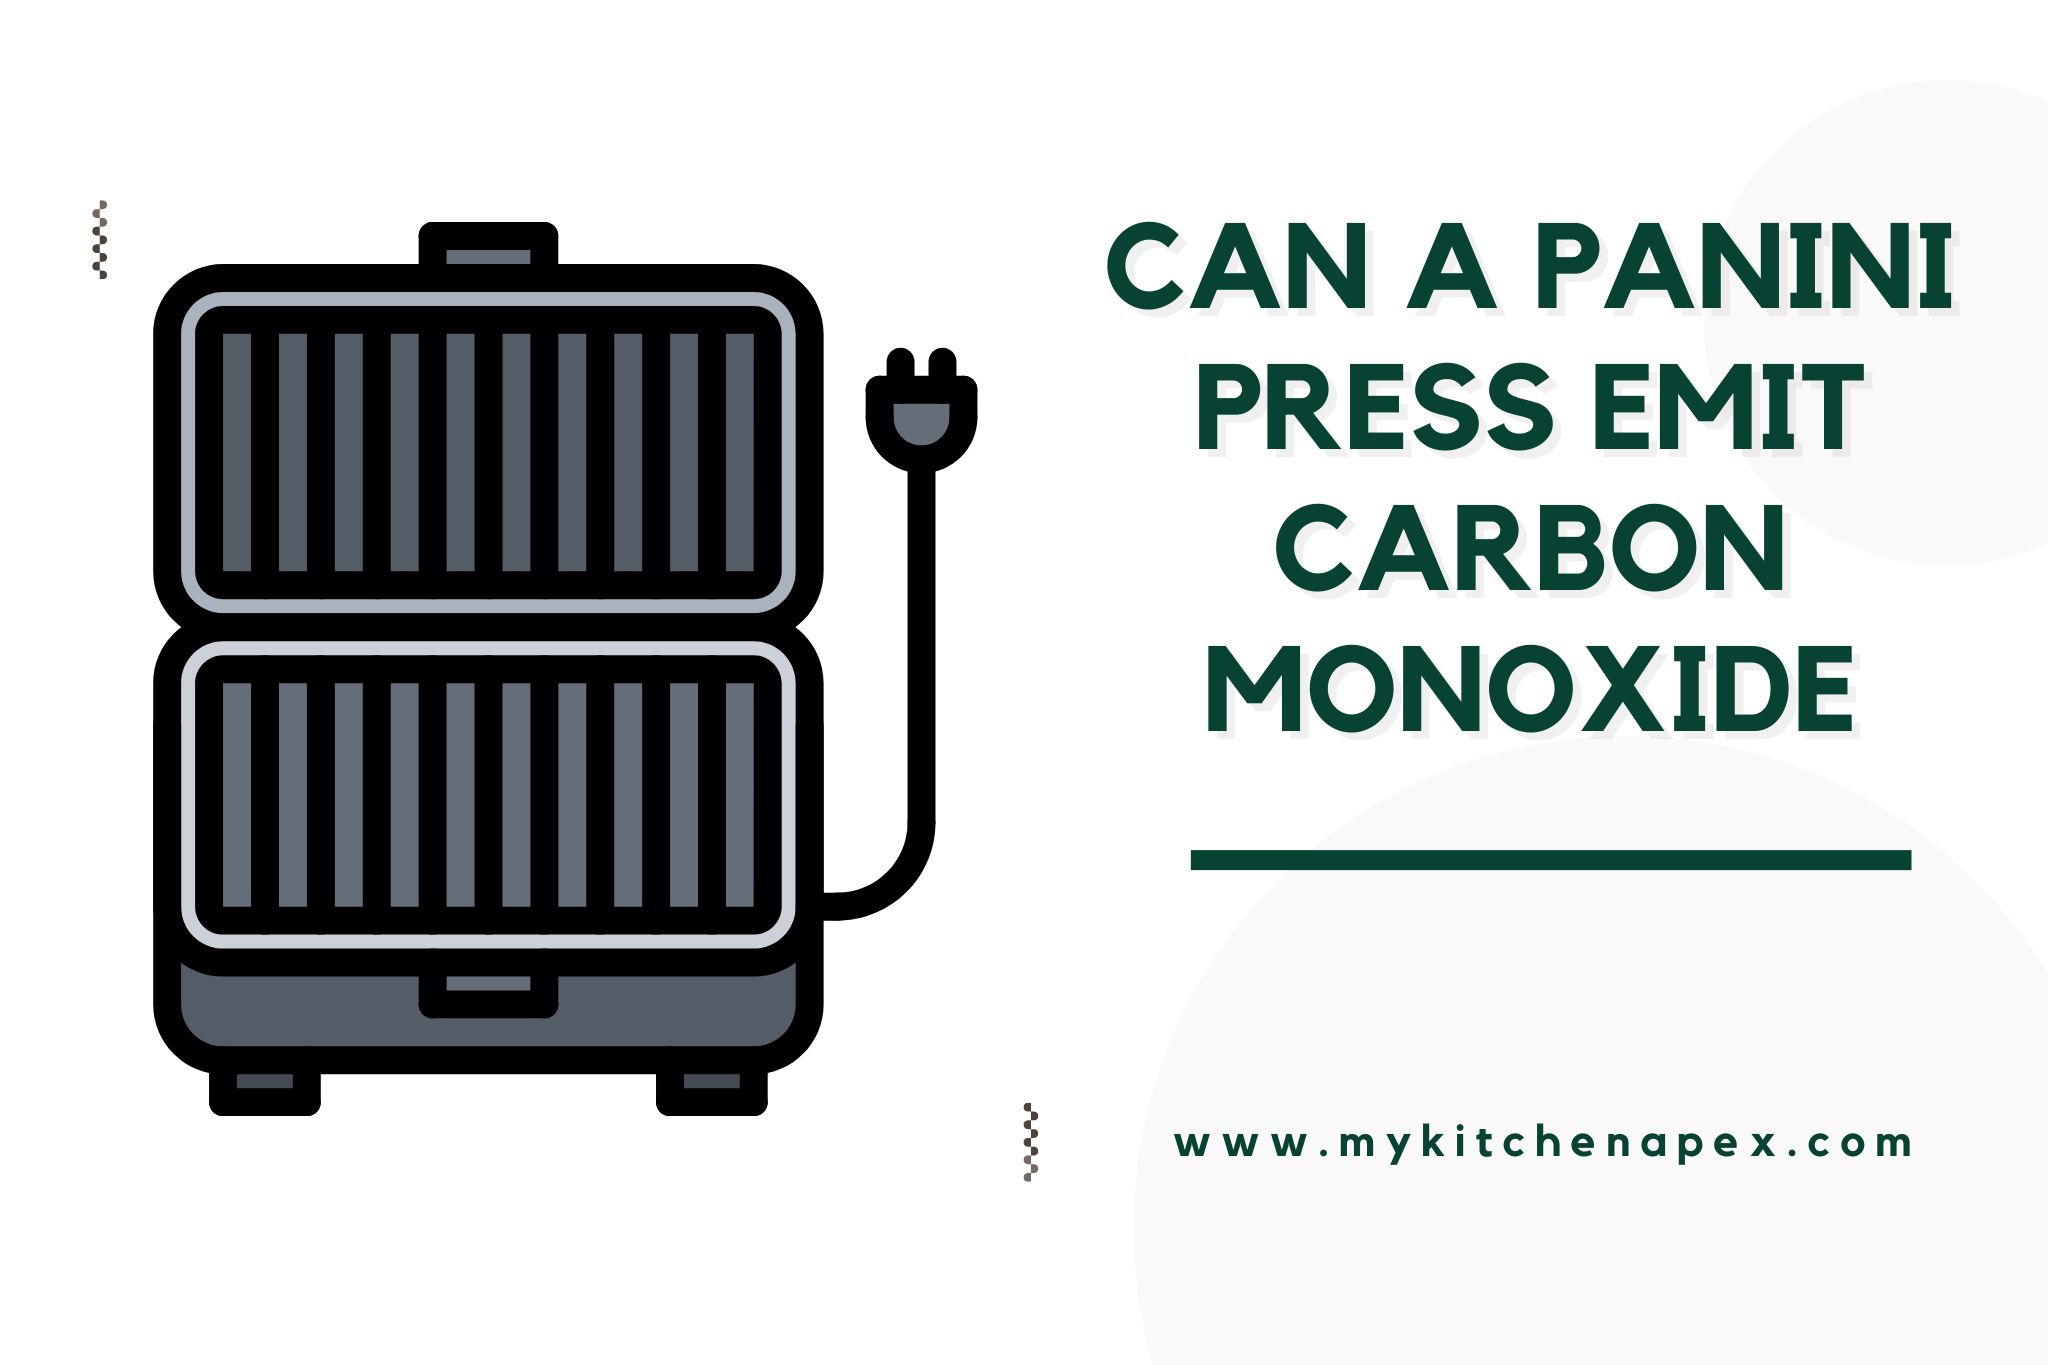 can a panini press emit carbon monoxide